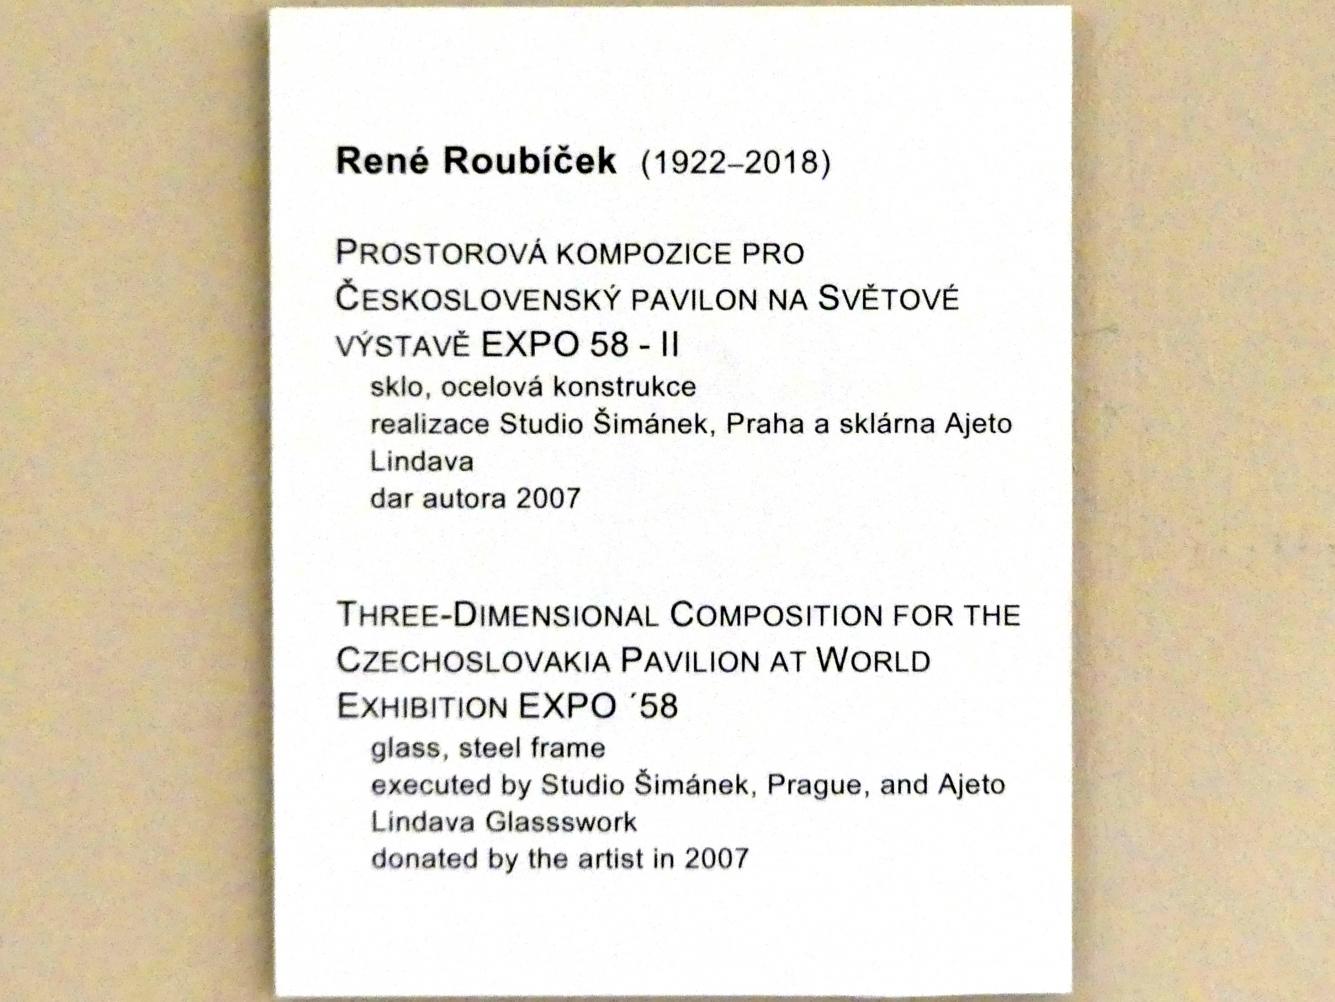 René Roubíček (1958), Dreidimensionale Komposition für den tschechoslowakischen Pavillon auf der Weltausstellung EXPO 1958, Prag, Nationalgalerie im Messepalast, Moderne Kunst, 1958, Bild 8/9